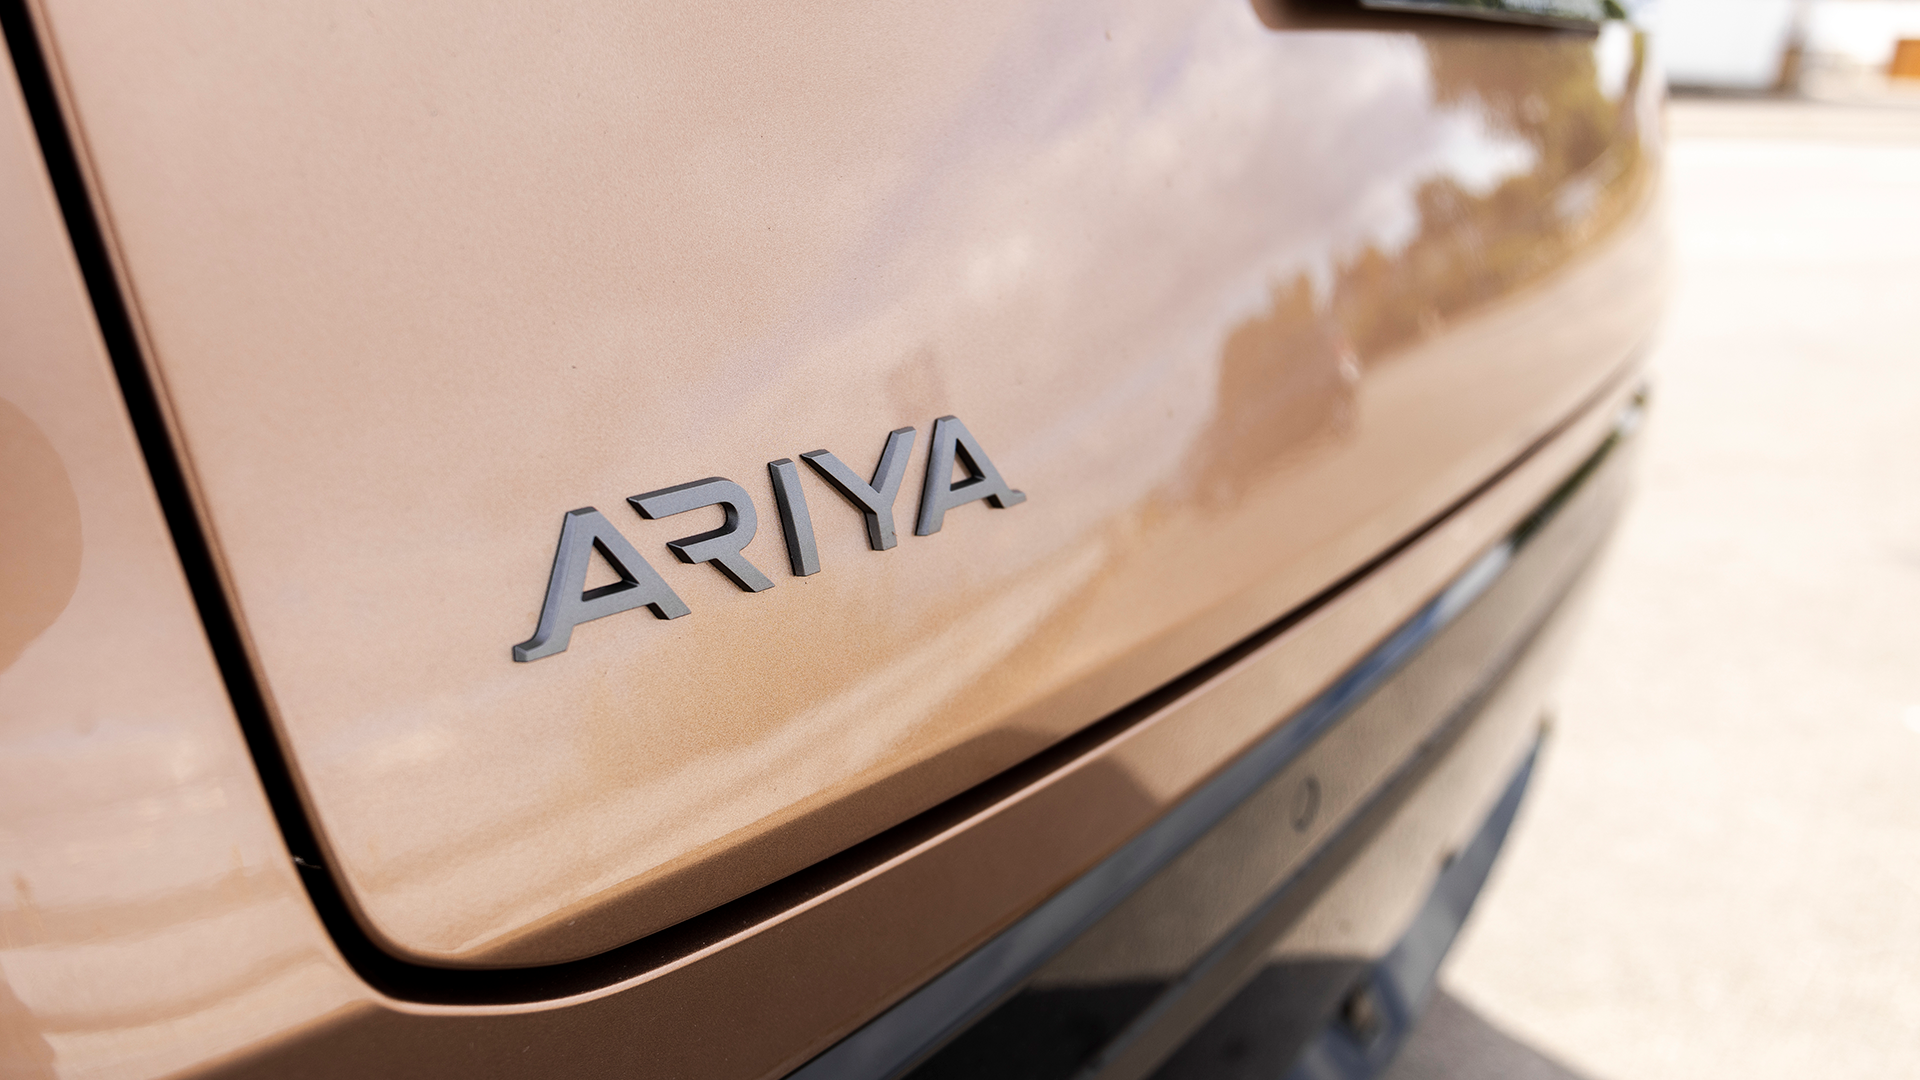 Nissan Ariya badge